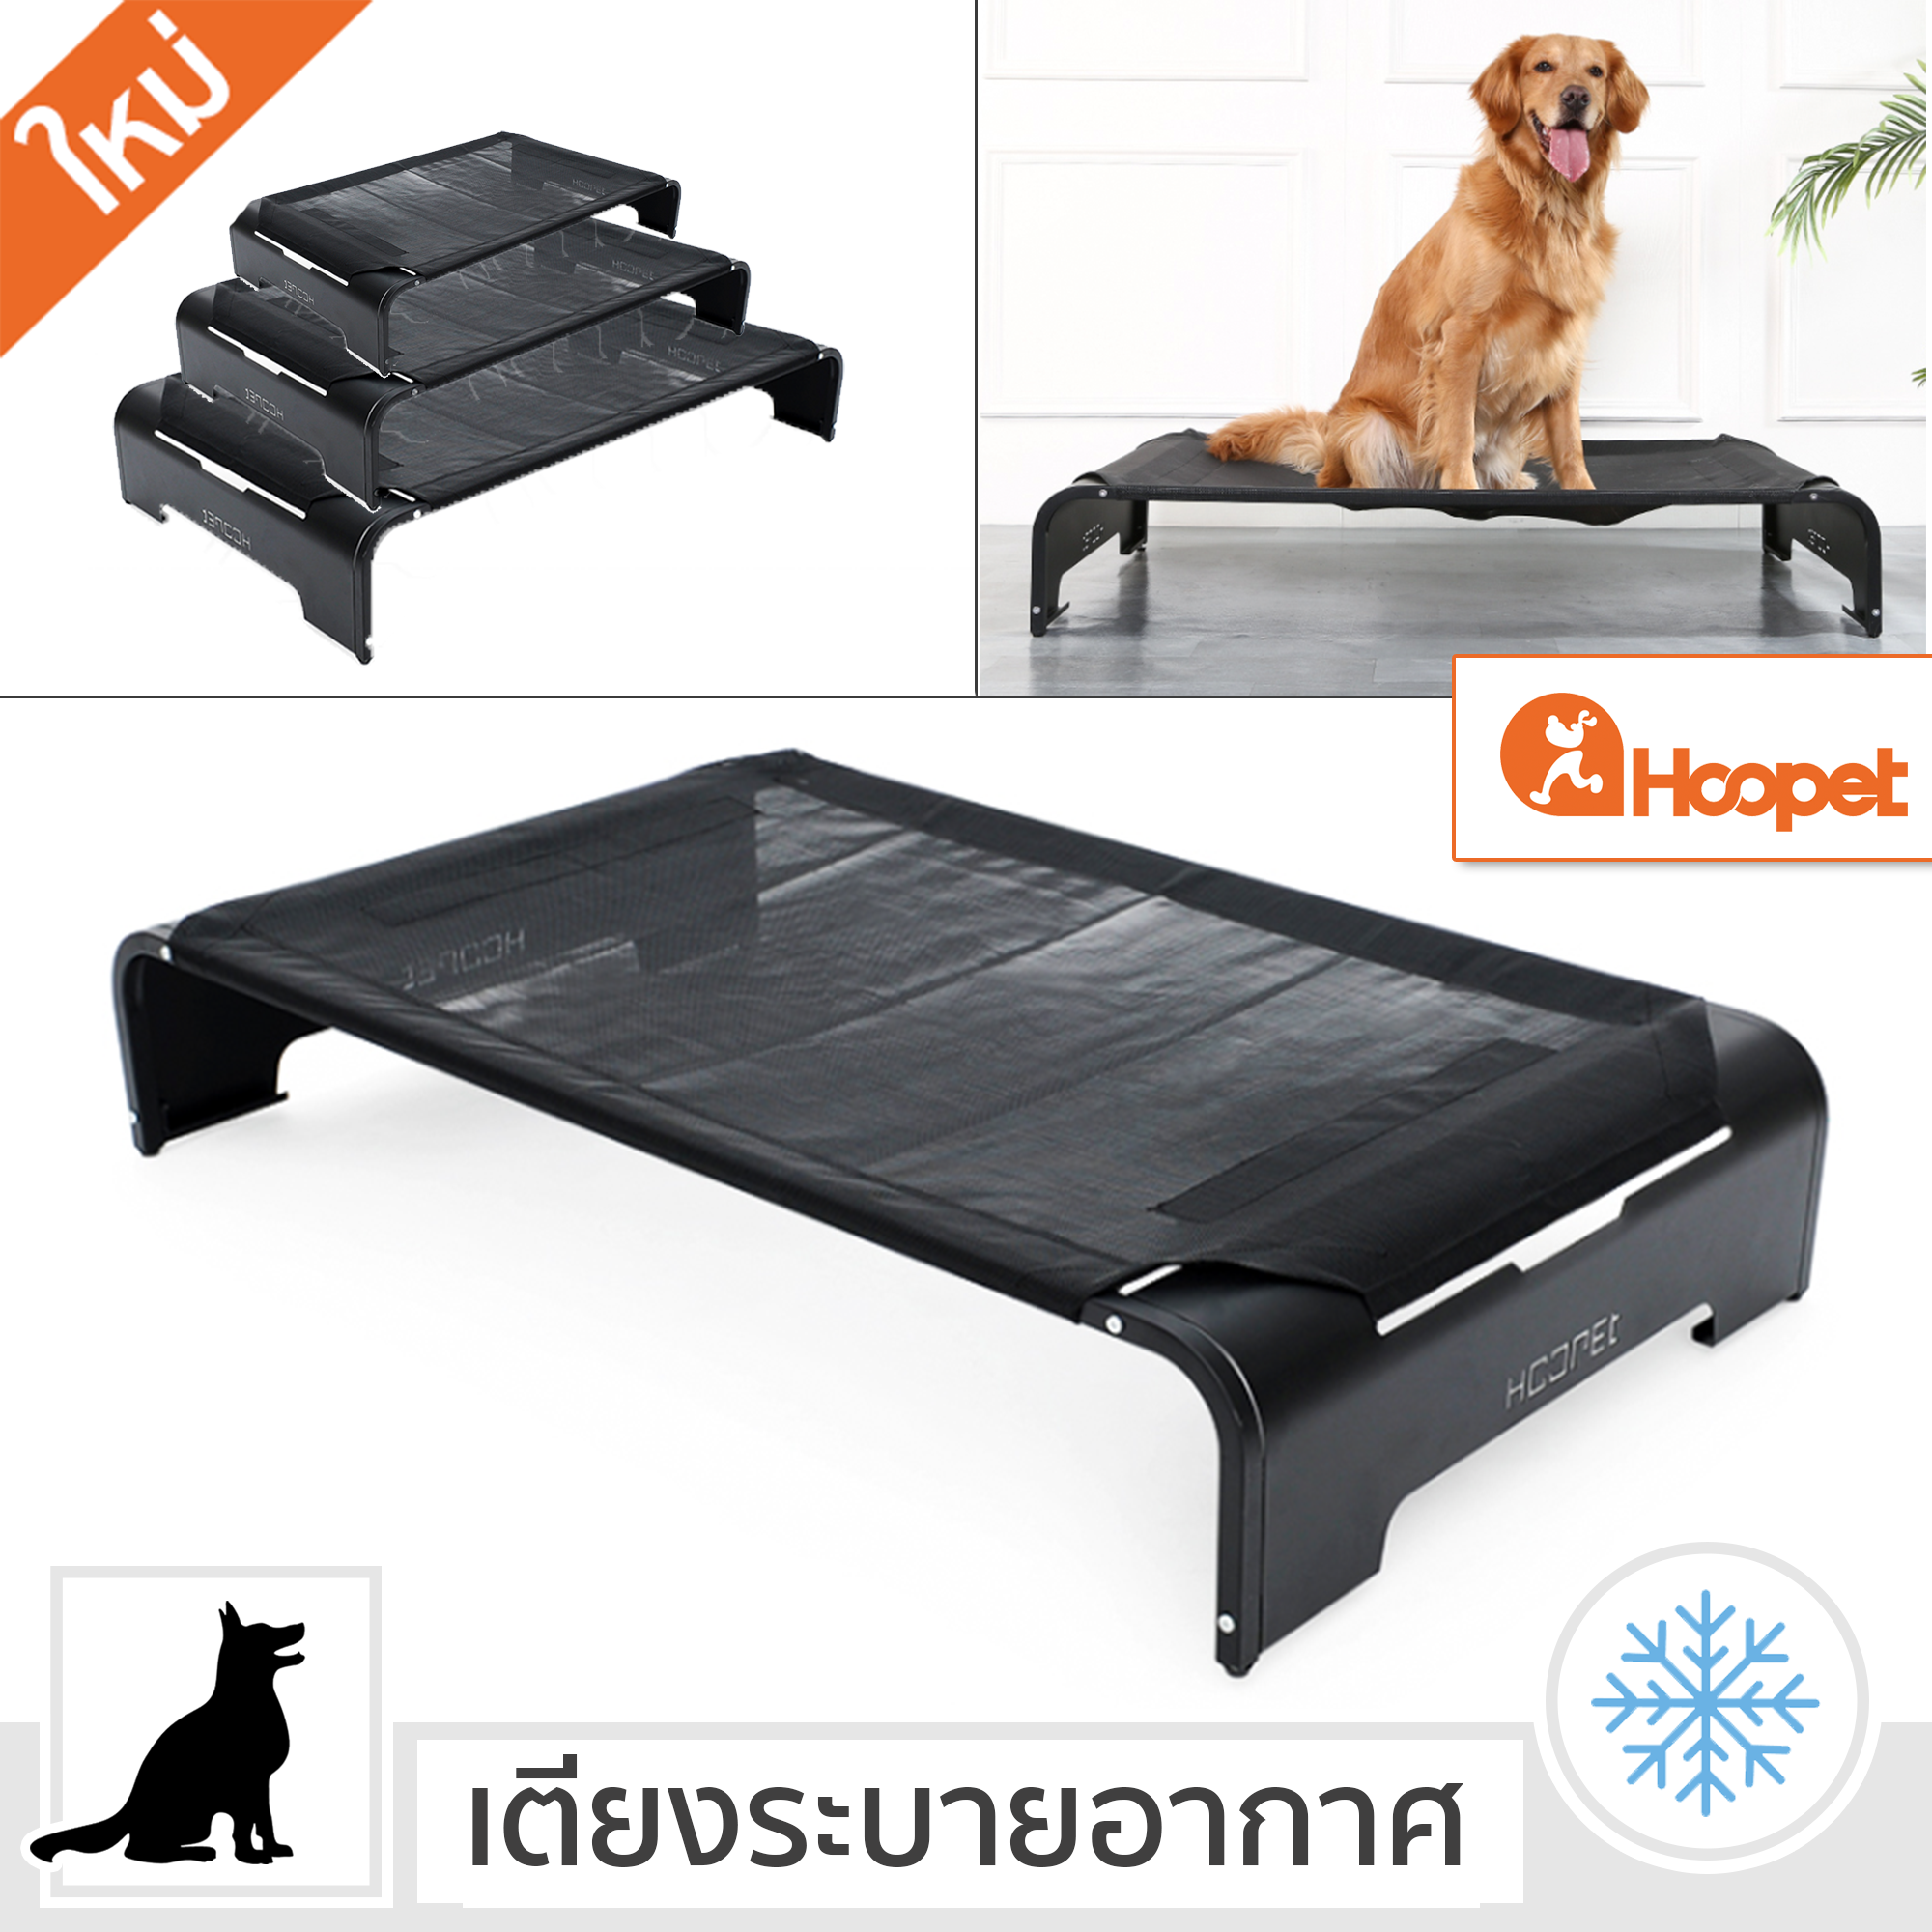 HOOPET เตียงสุนัข ใหม่ 2021 Elevated Dog Bed ที่นอนสุนัข แบบยกสูง ผ้าตาข่าย ป้องกันการกดทับ ที่นอนหมา ระบายความร้อน เตียงแมว Size M L XL